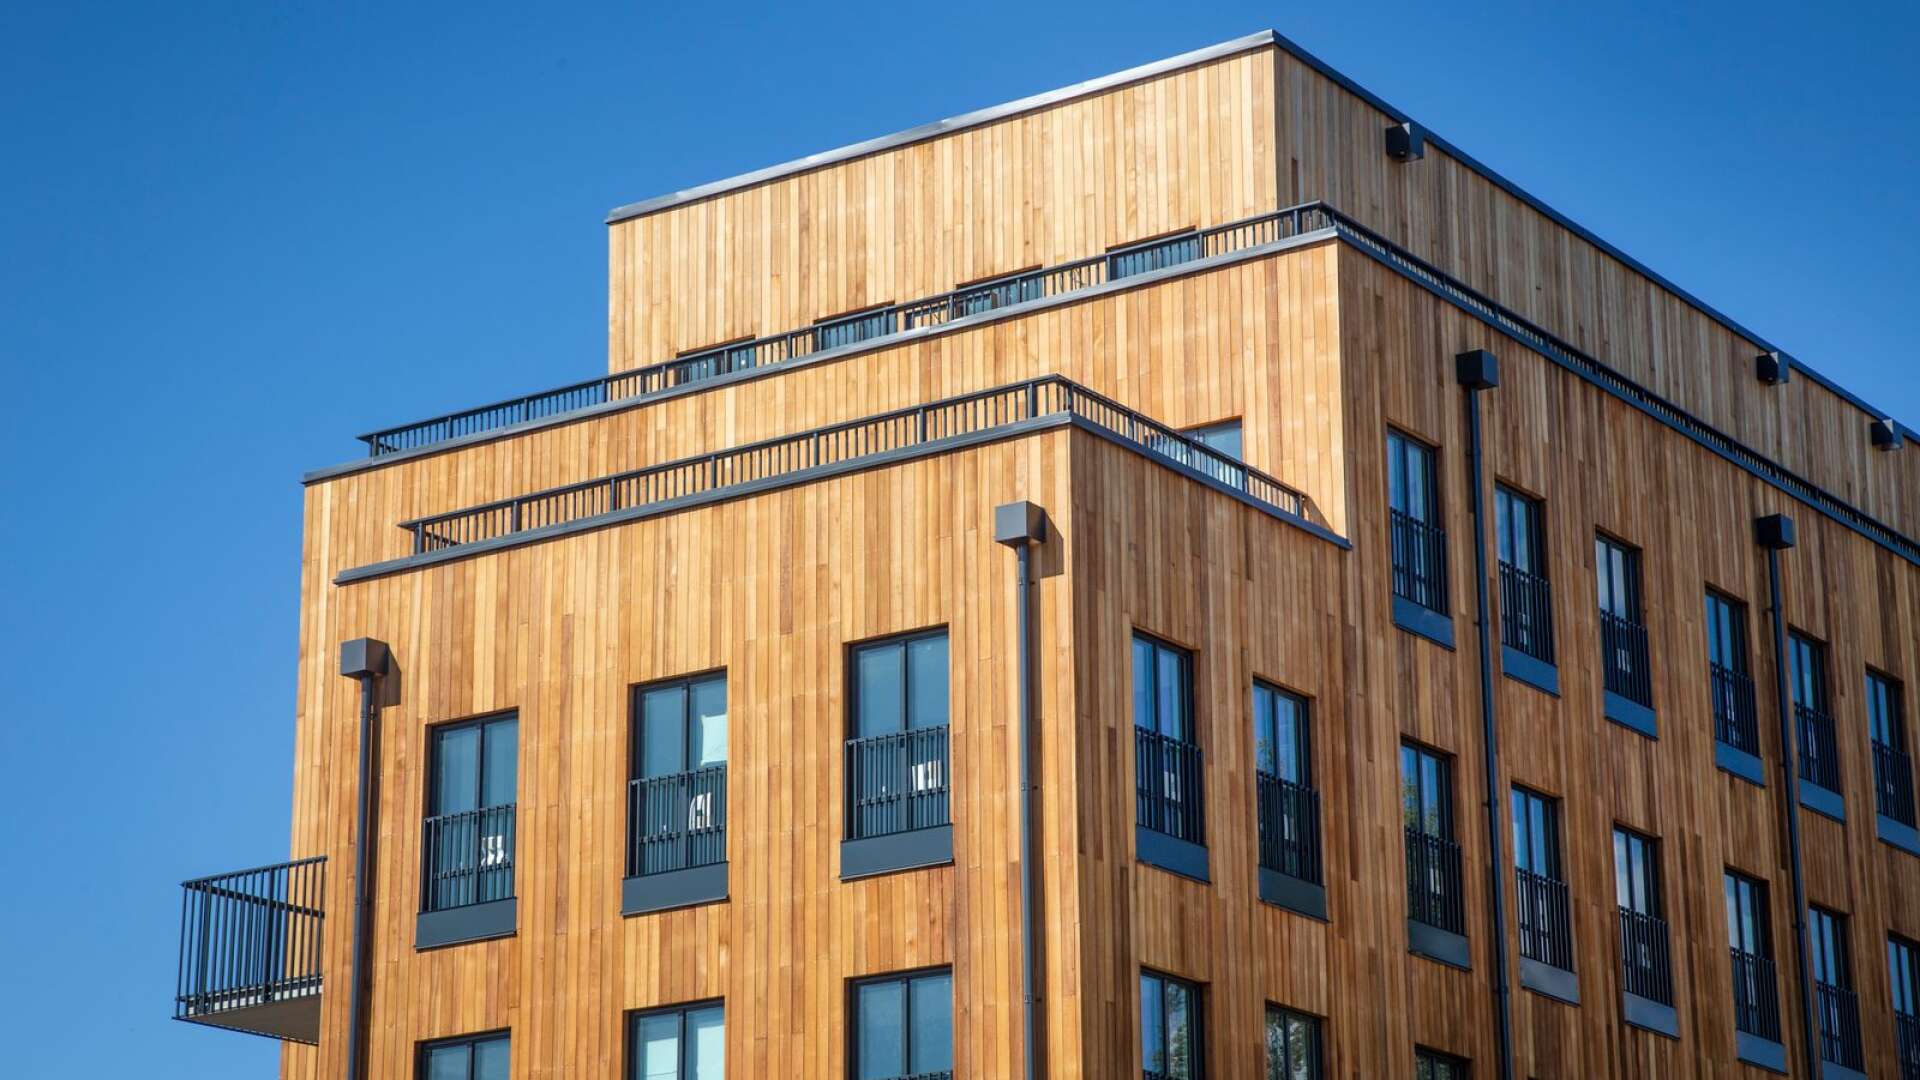 Vi uppmanar Region Värmland att förorda trä som byggmaterial i projektet och göra Centralsjukhuset till ett flaggskepp för värmländskt träbyggande, skriver Anders Bengtsson med flera.